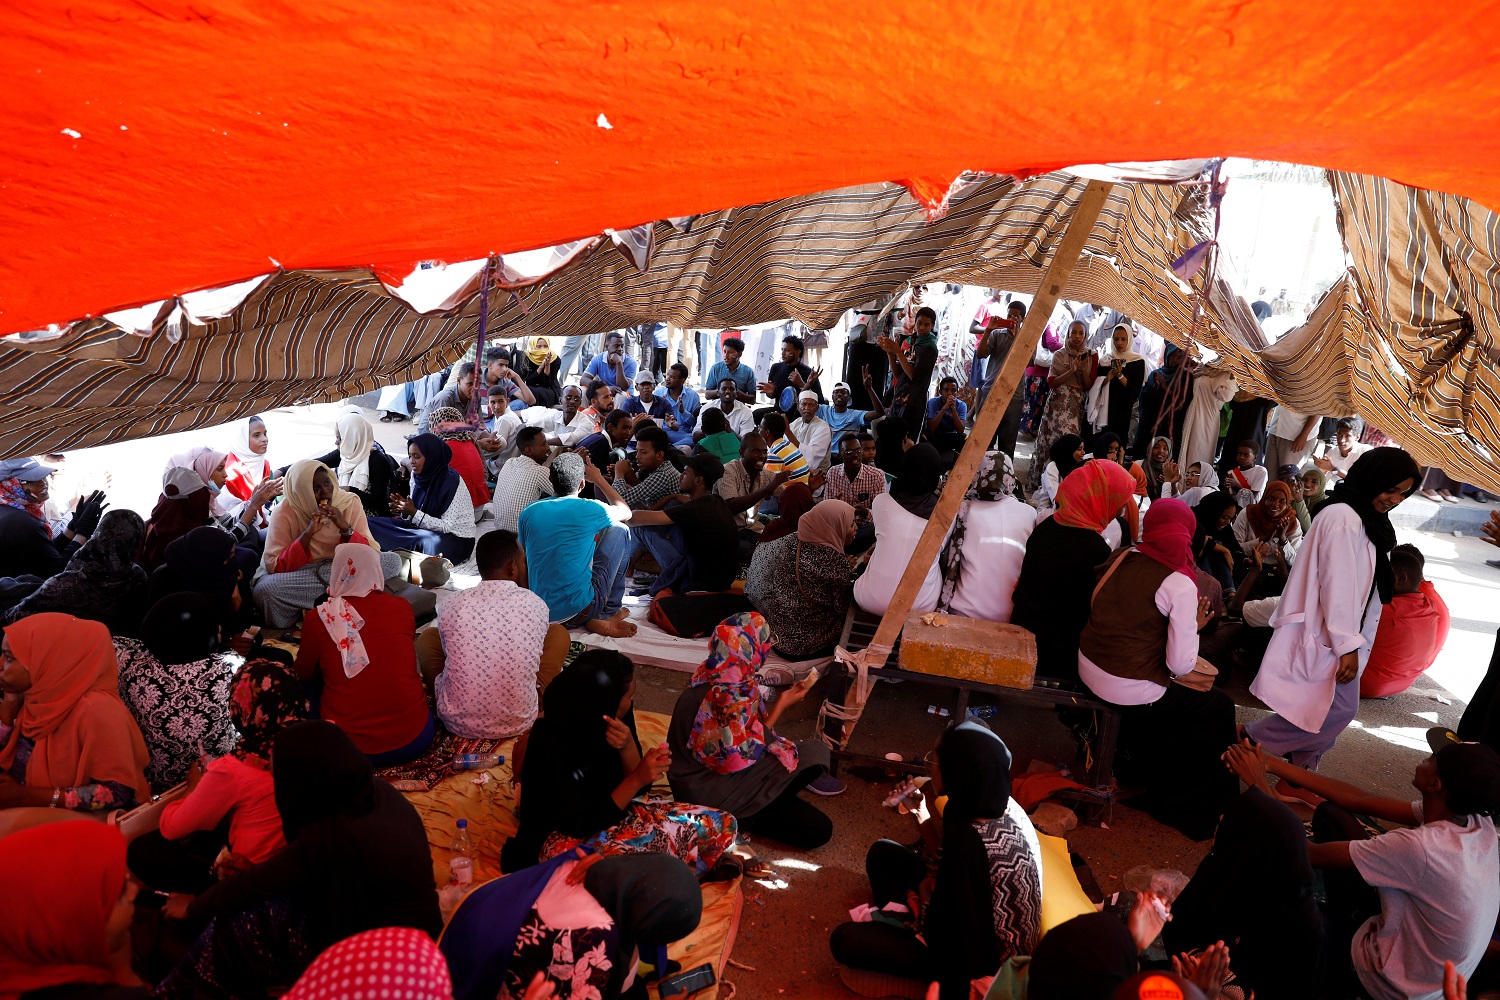 سودانيون مشاركون في الاحتجاجات أمام وزارة الدفاع يجلسون تحت مظلة للاحتماء من أشعة الشمس، 25 أبريل 2019. رويترز 